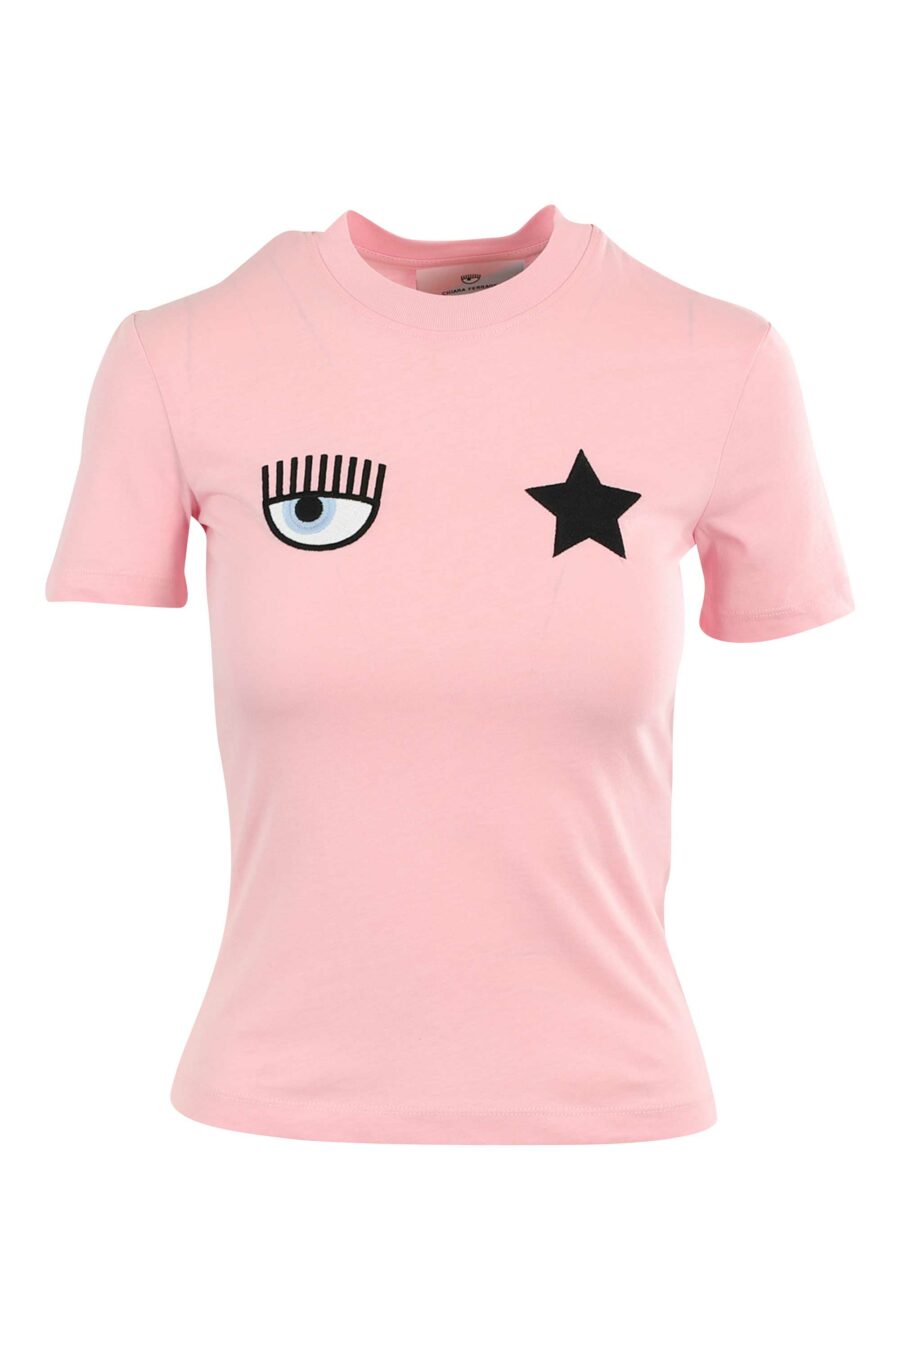 Rosa T-Shirt mit Auge und Stern - 8052672416841